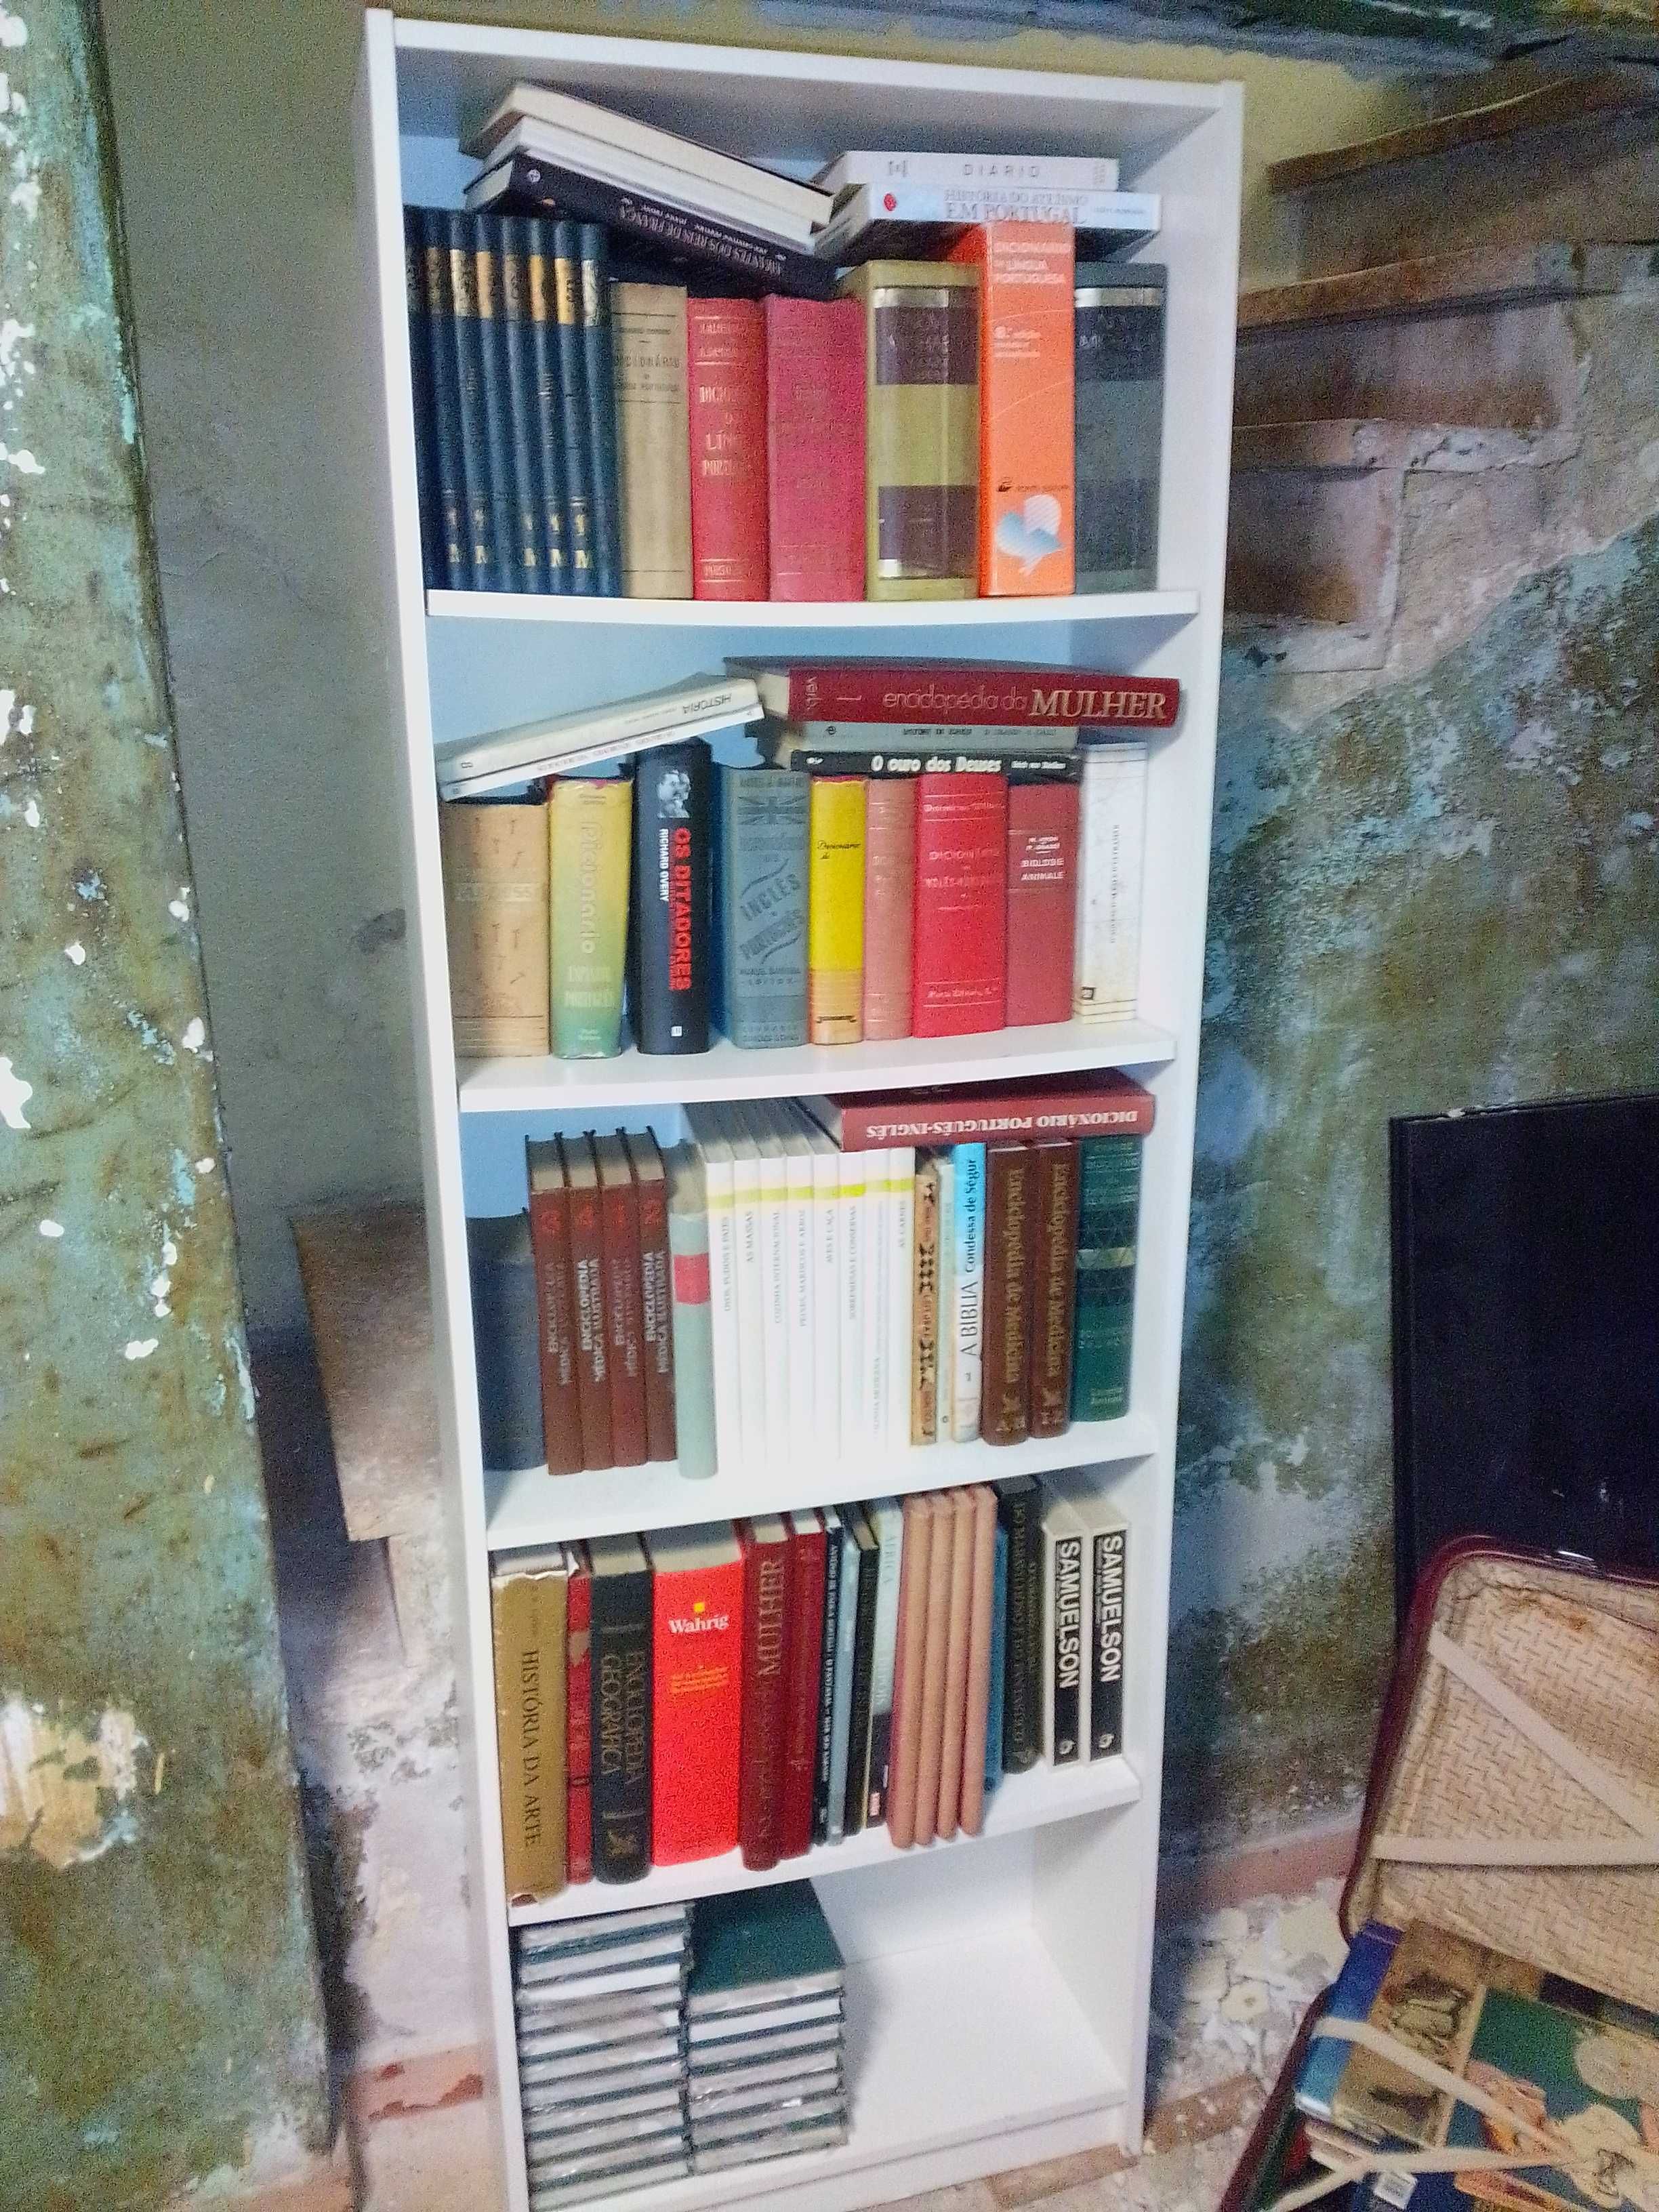 Lote de livros antigos